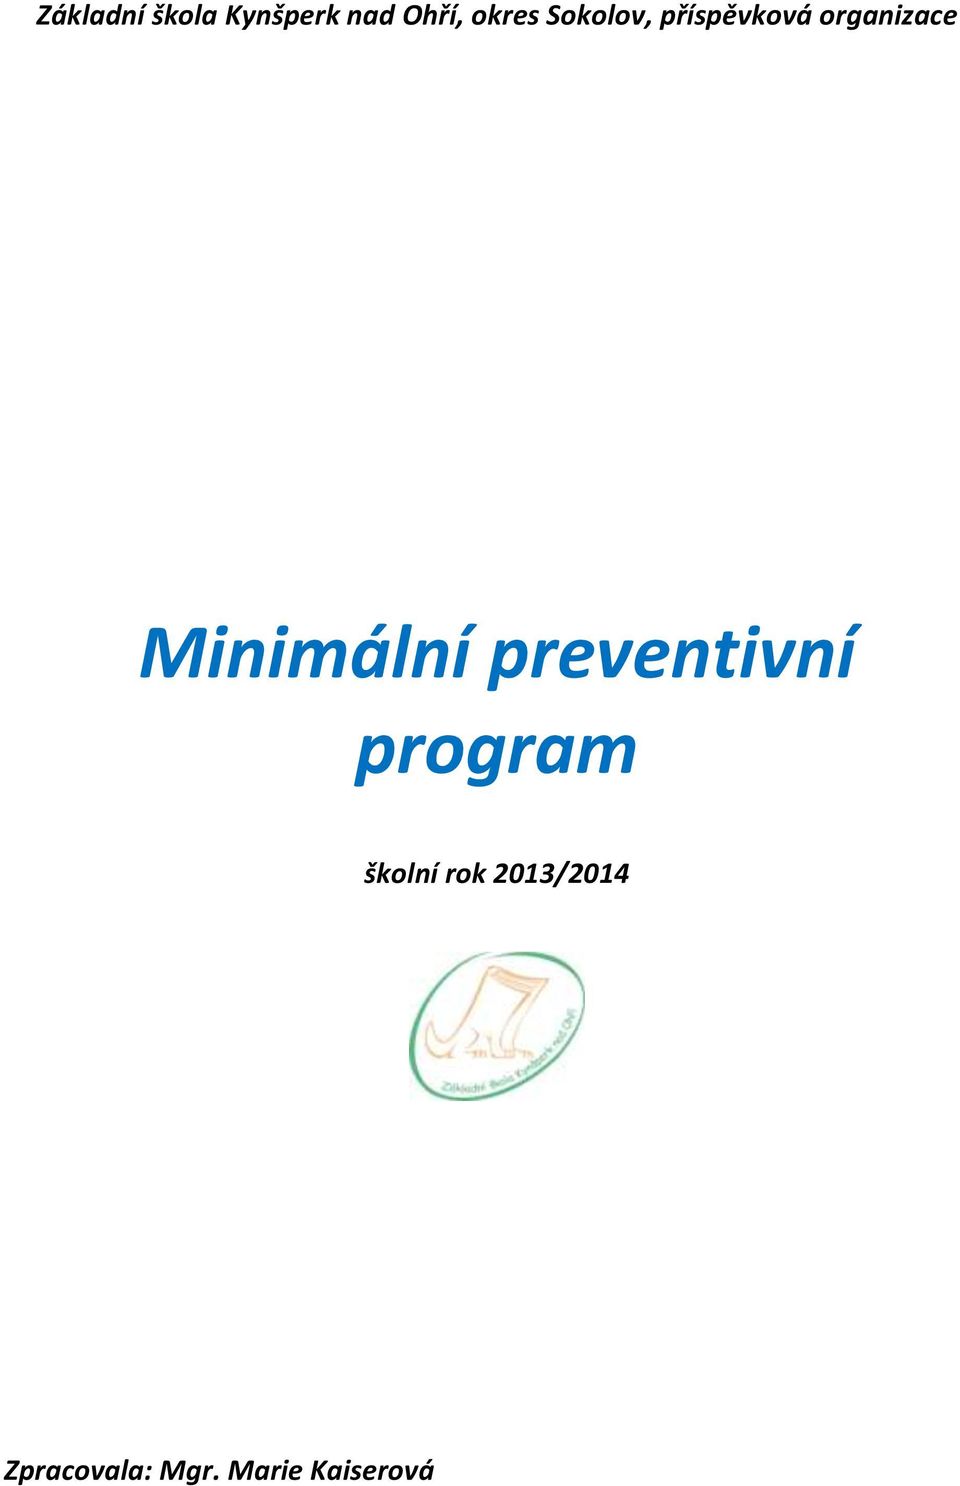 Minimální preventivní program školní